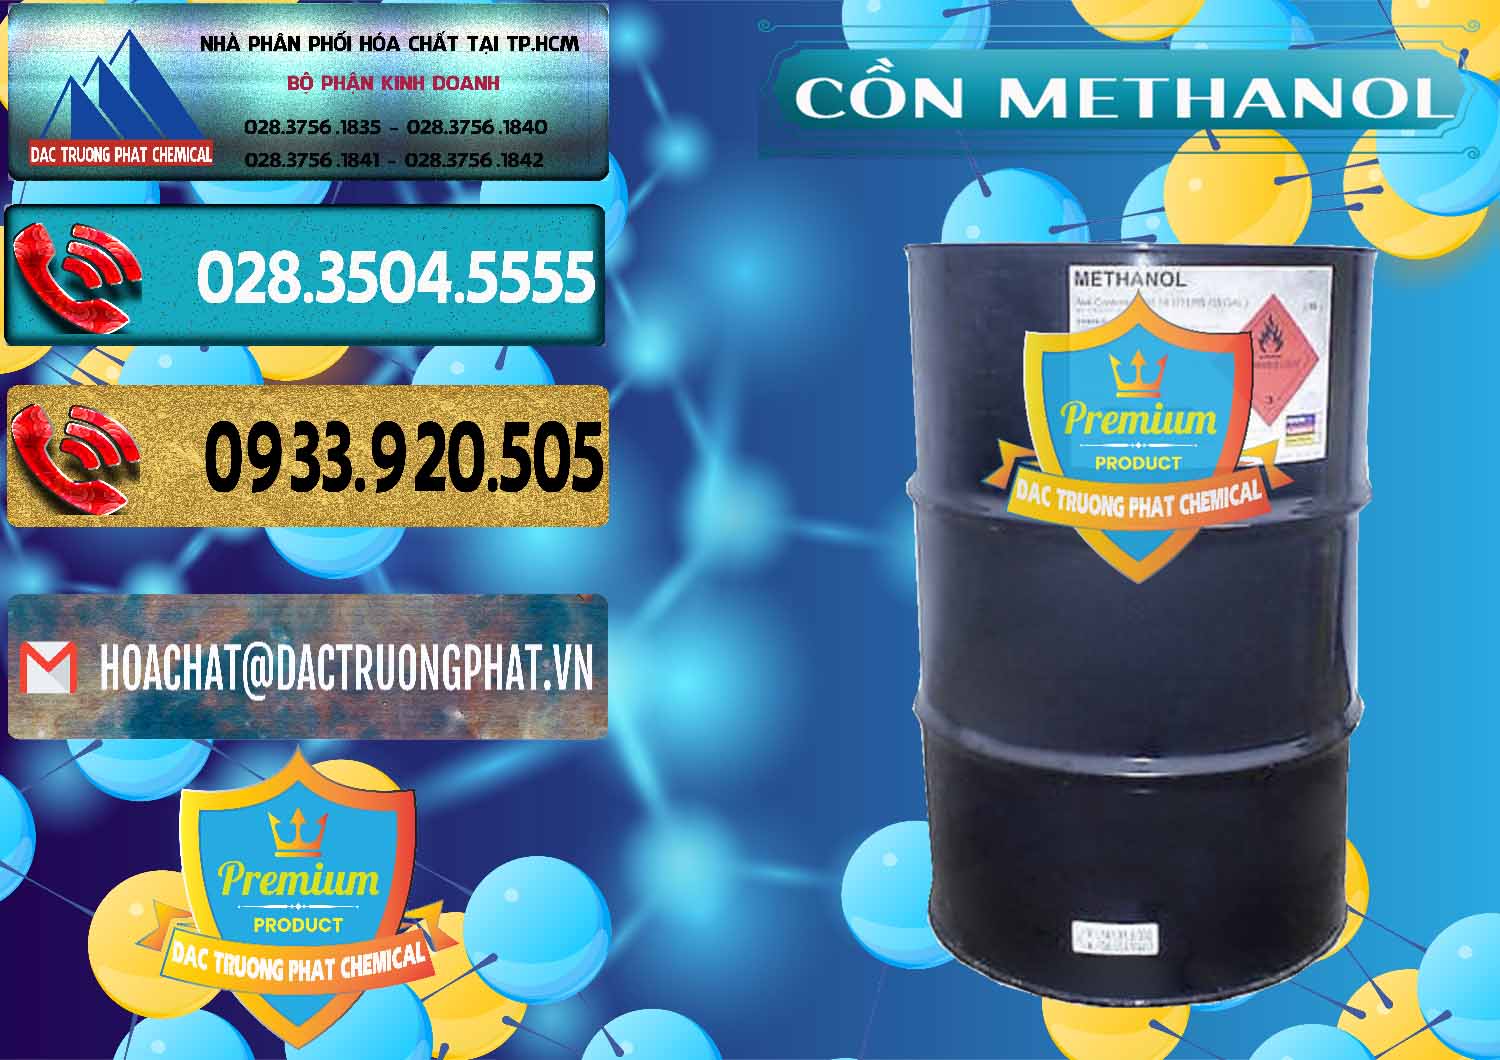 Nơi nhập khẩu _ bán Cồn Methanol - Methyl Alcohol Mã Lai Malaysia - 0331 - Công ty phân phối - cung cấp hóa chất tại TP.HCM - hoachatdetnhuom.com